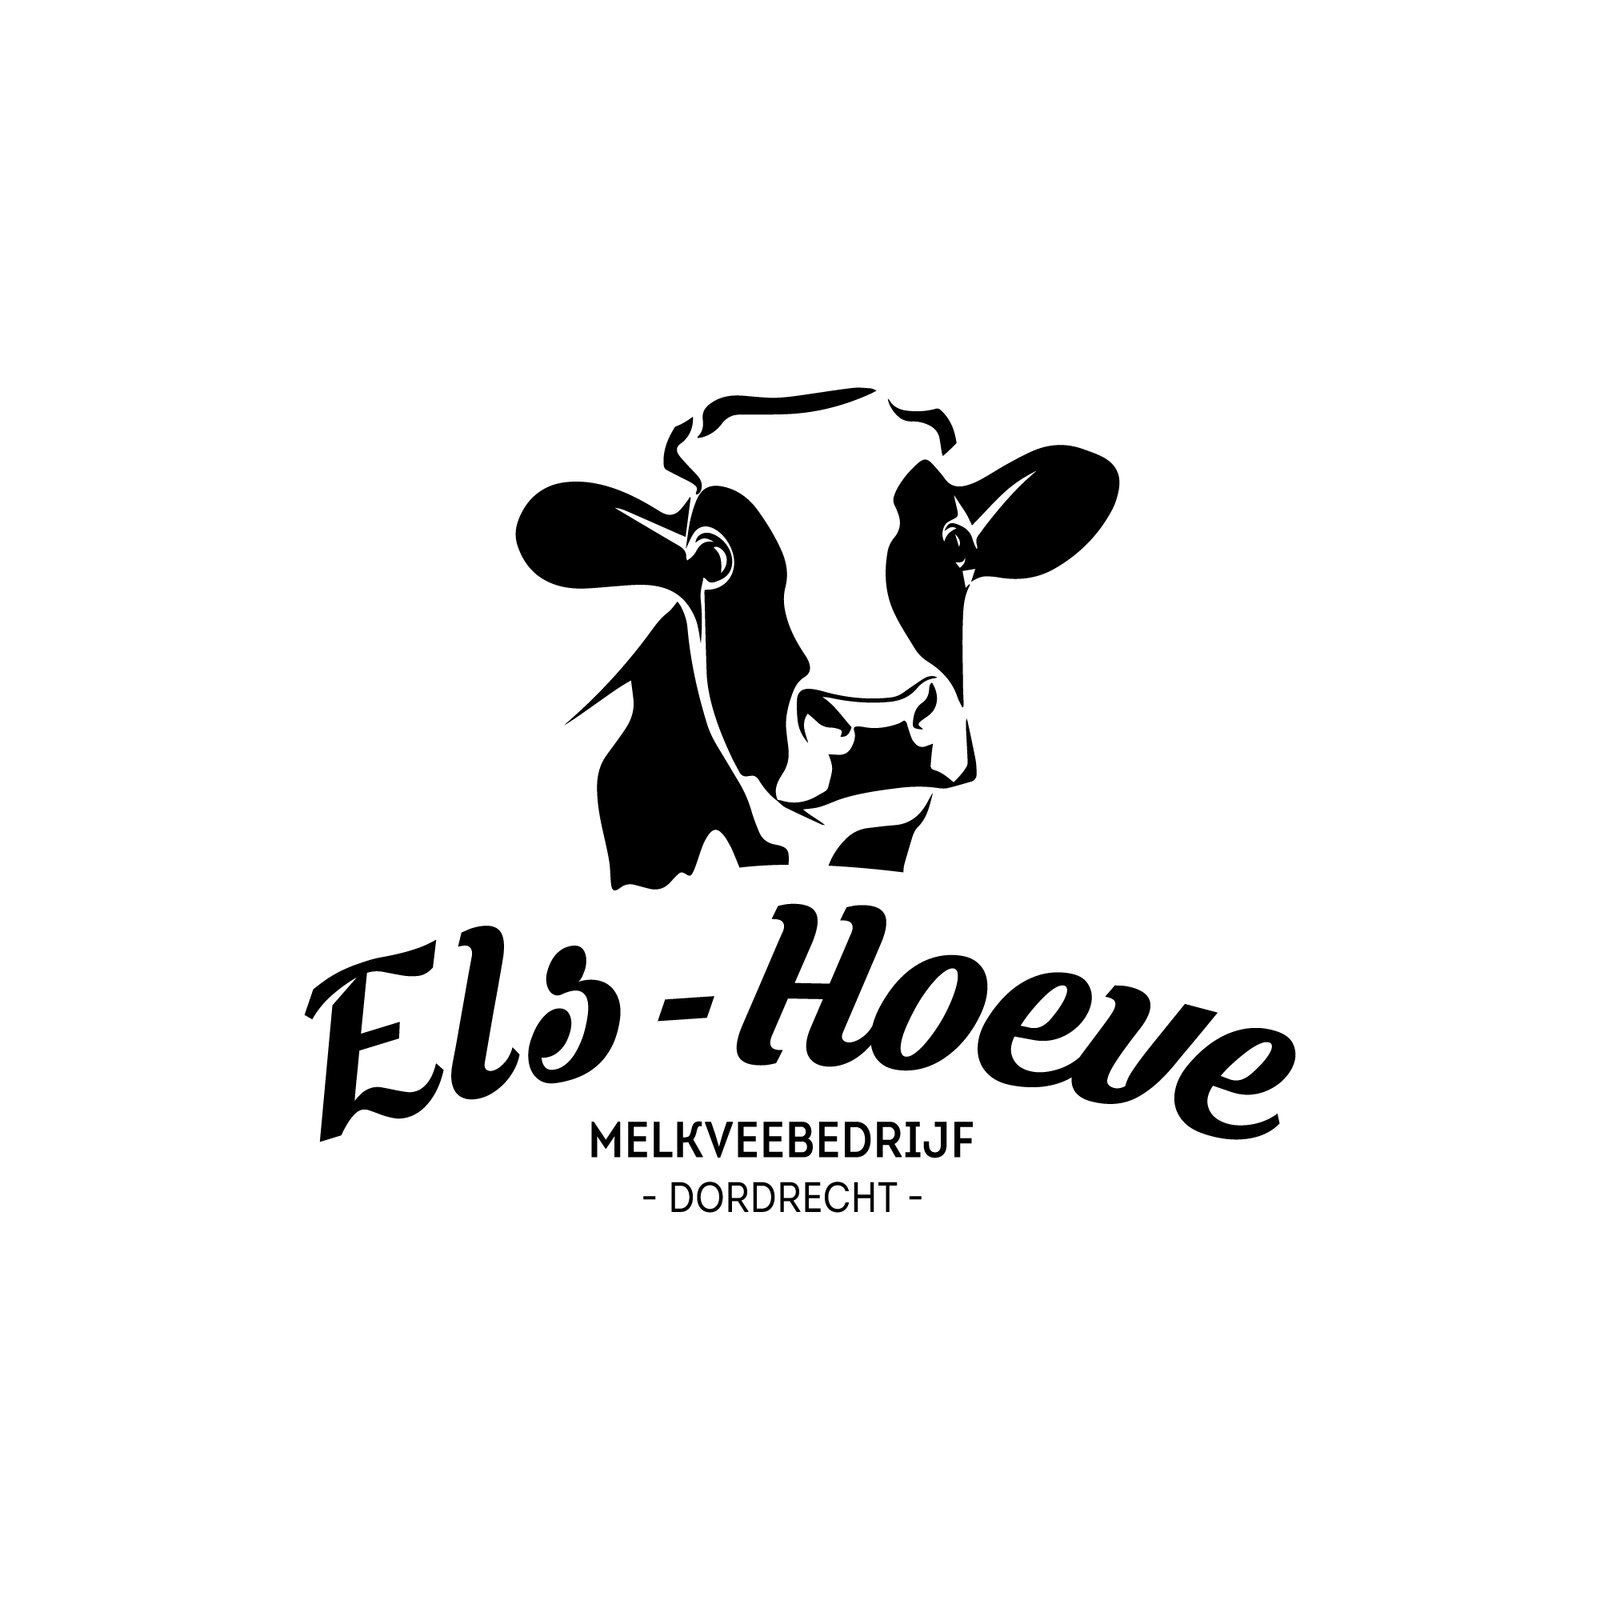 Boerderijwinkel Els-hoeve